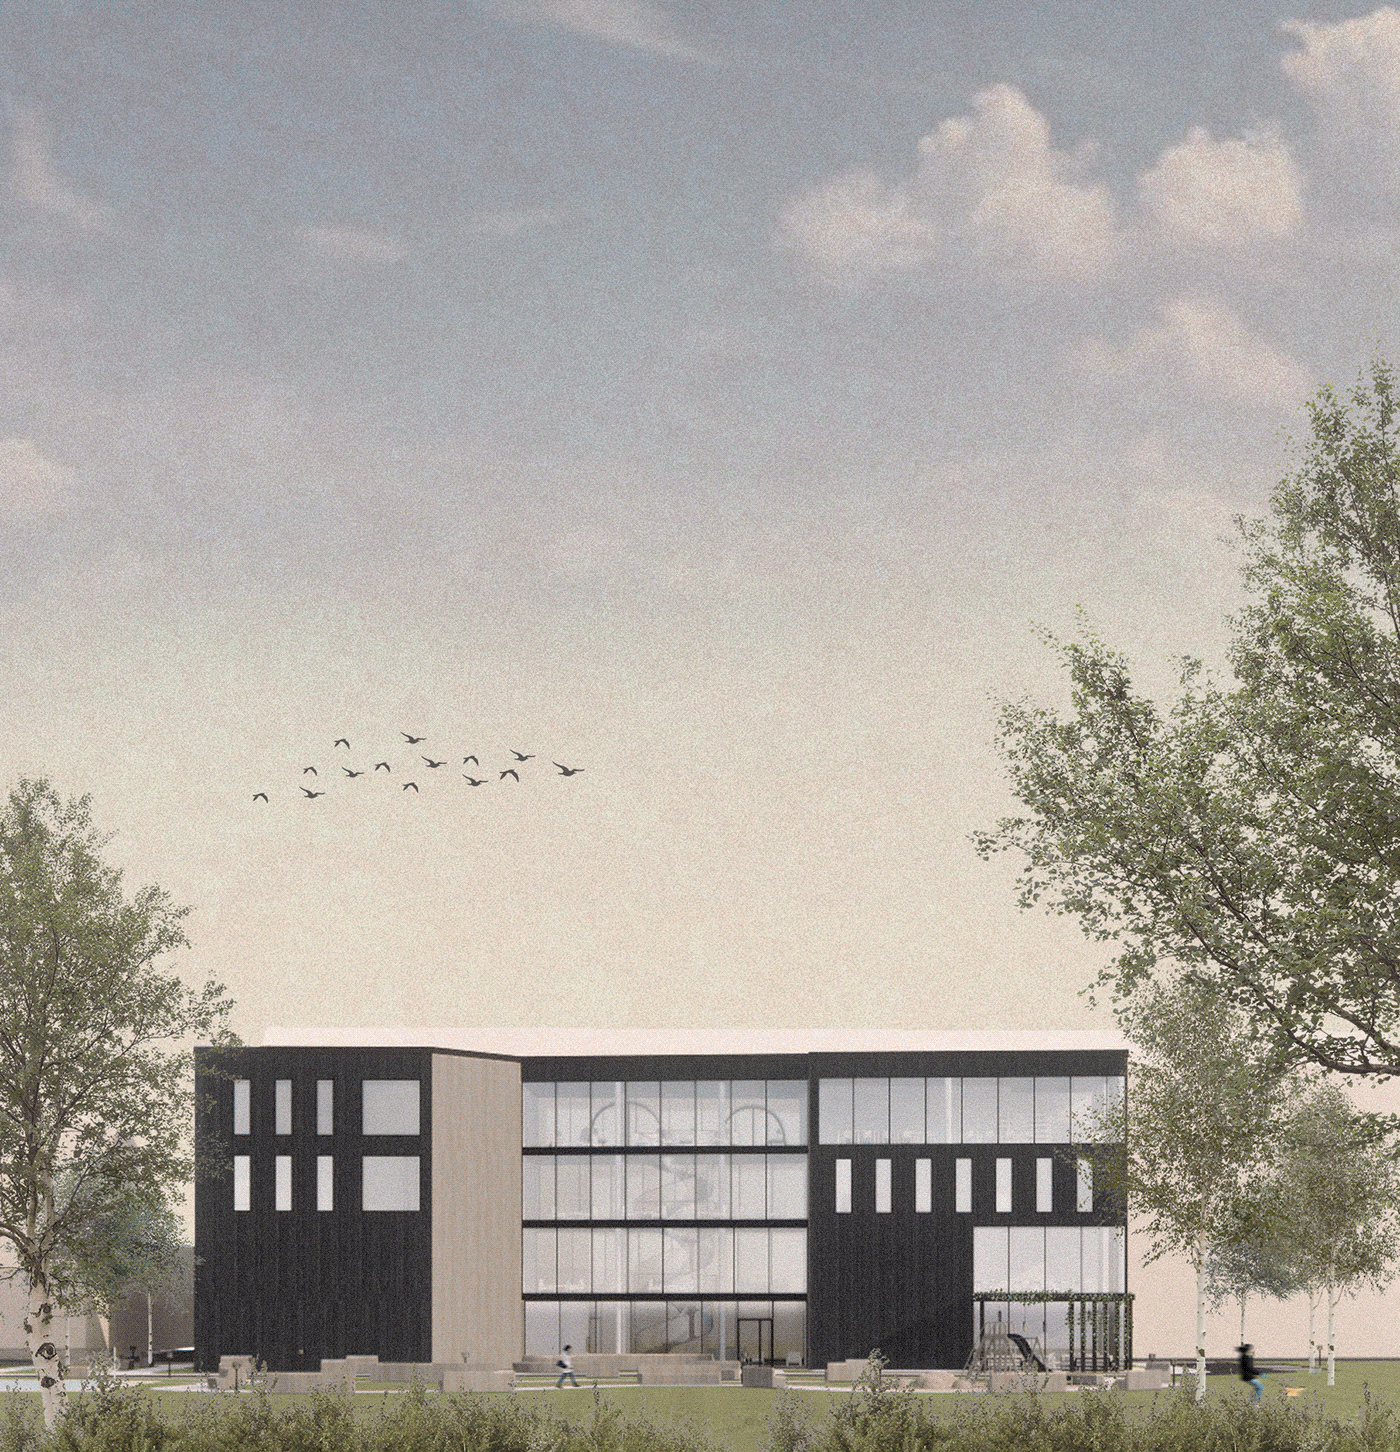 architecture building culture centre enscape Project Render student visualization